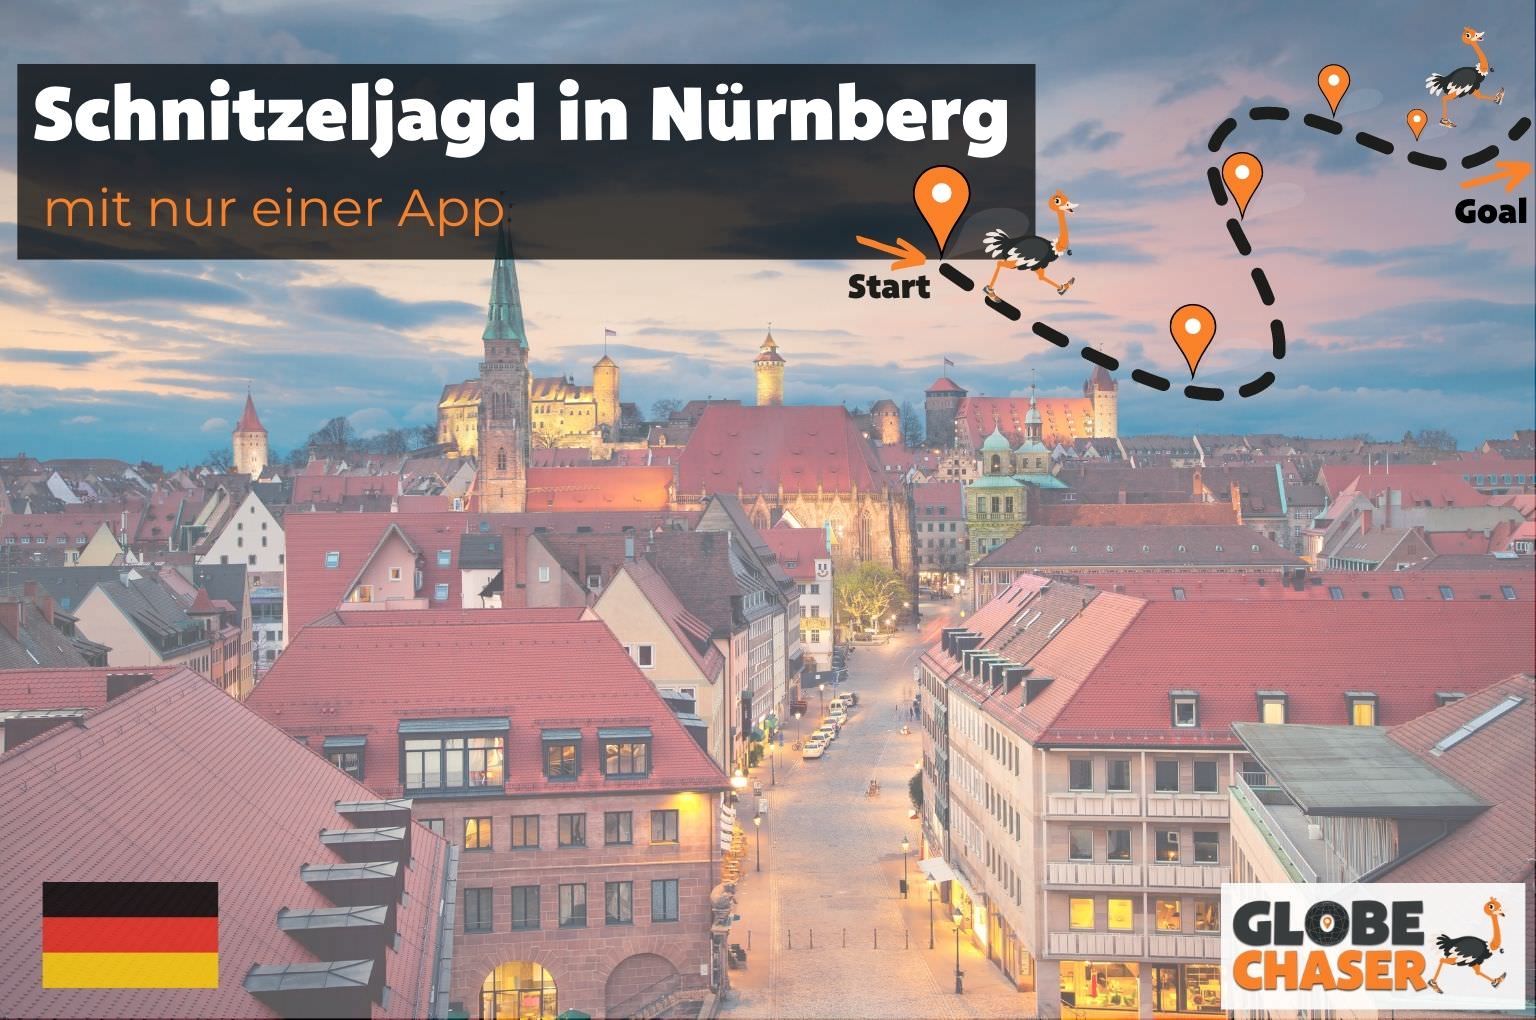 Schnitzeljagd in Nürnberg mit App - Globe Chaser Erlebnisse Deutschland